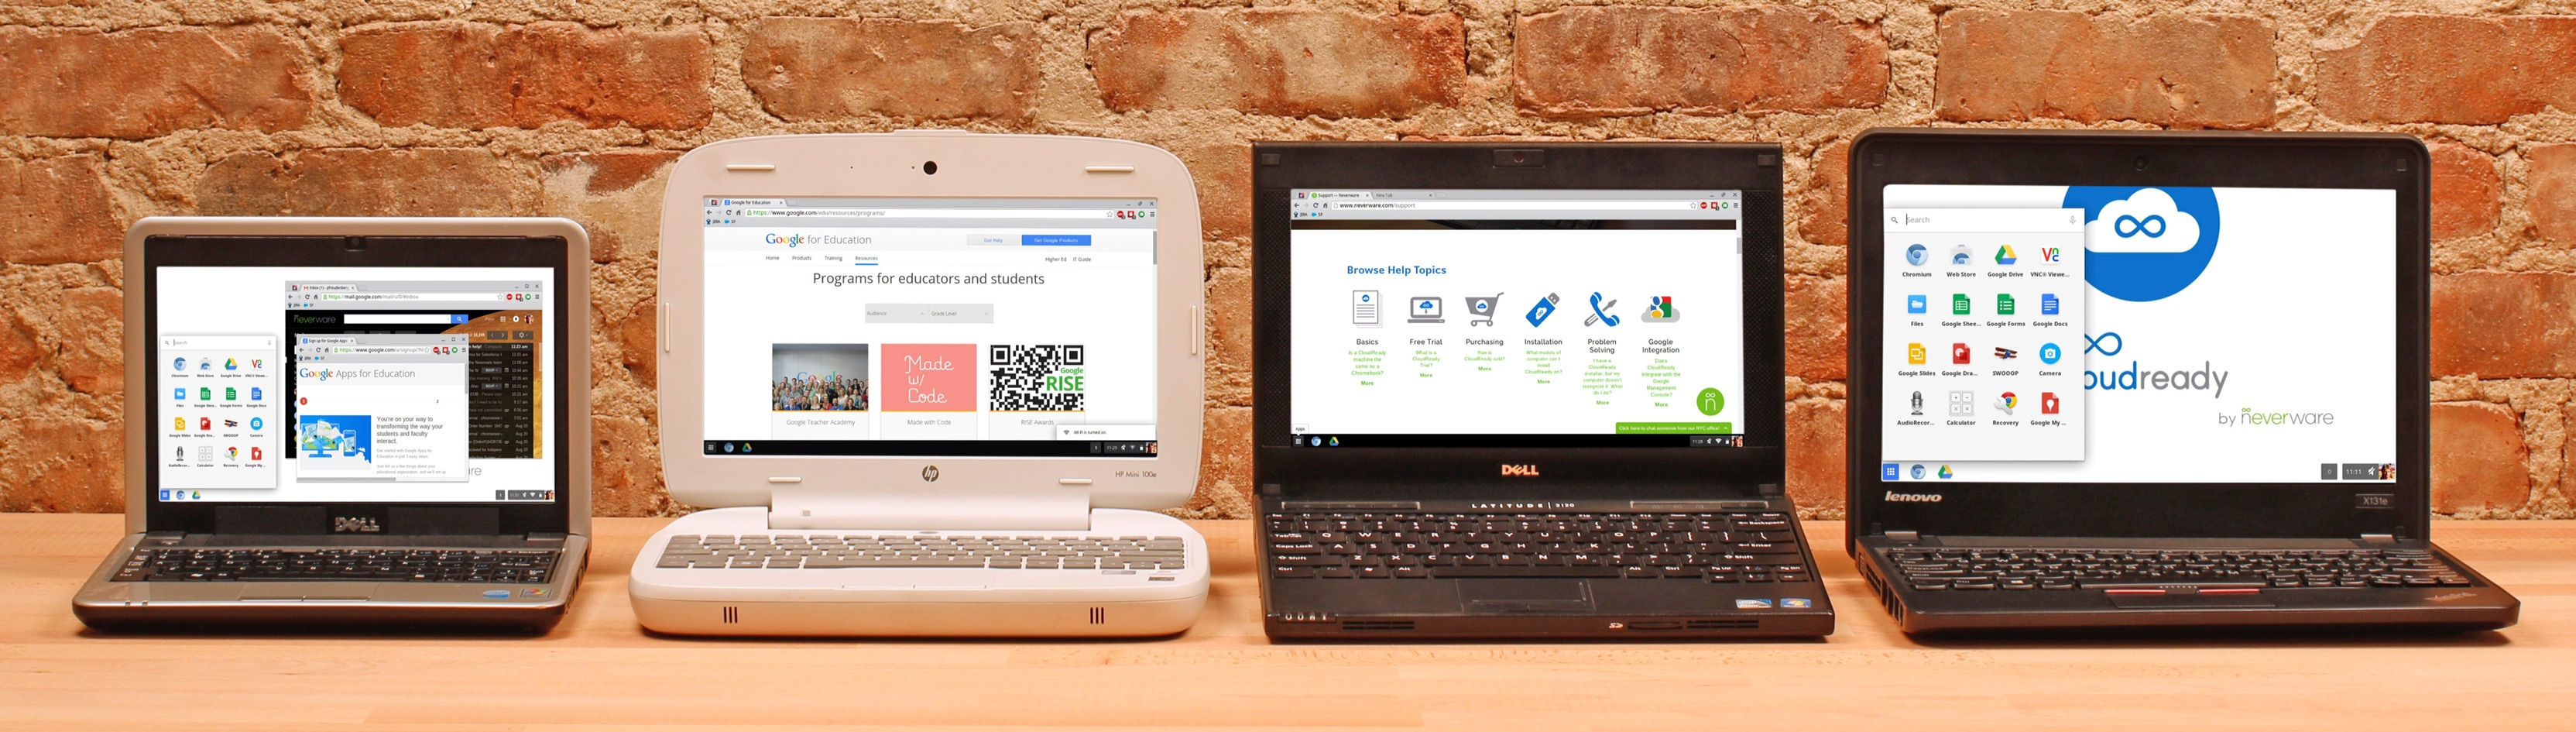 ПО, превращающая старые ПК в Chromebook, теперь принадлежит Google